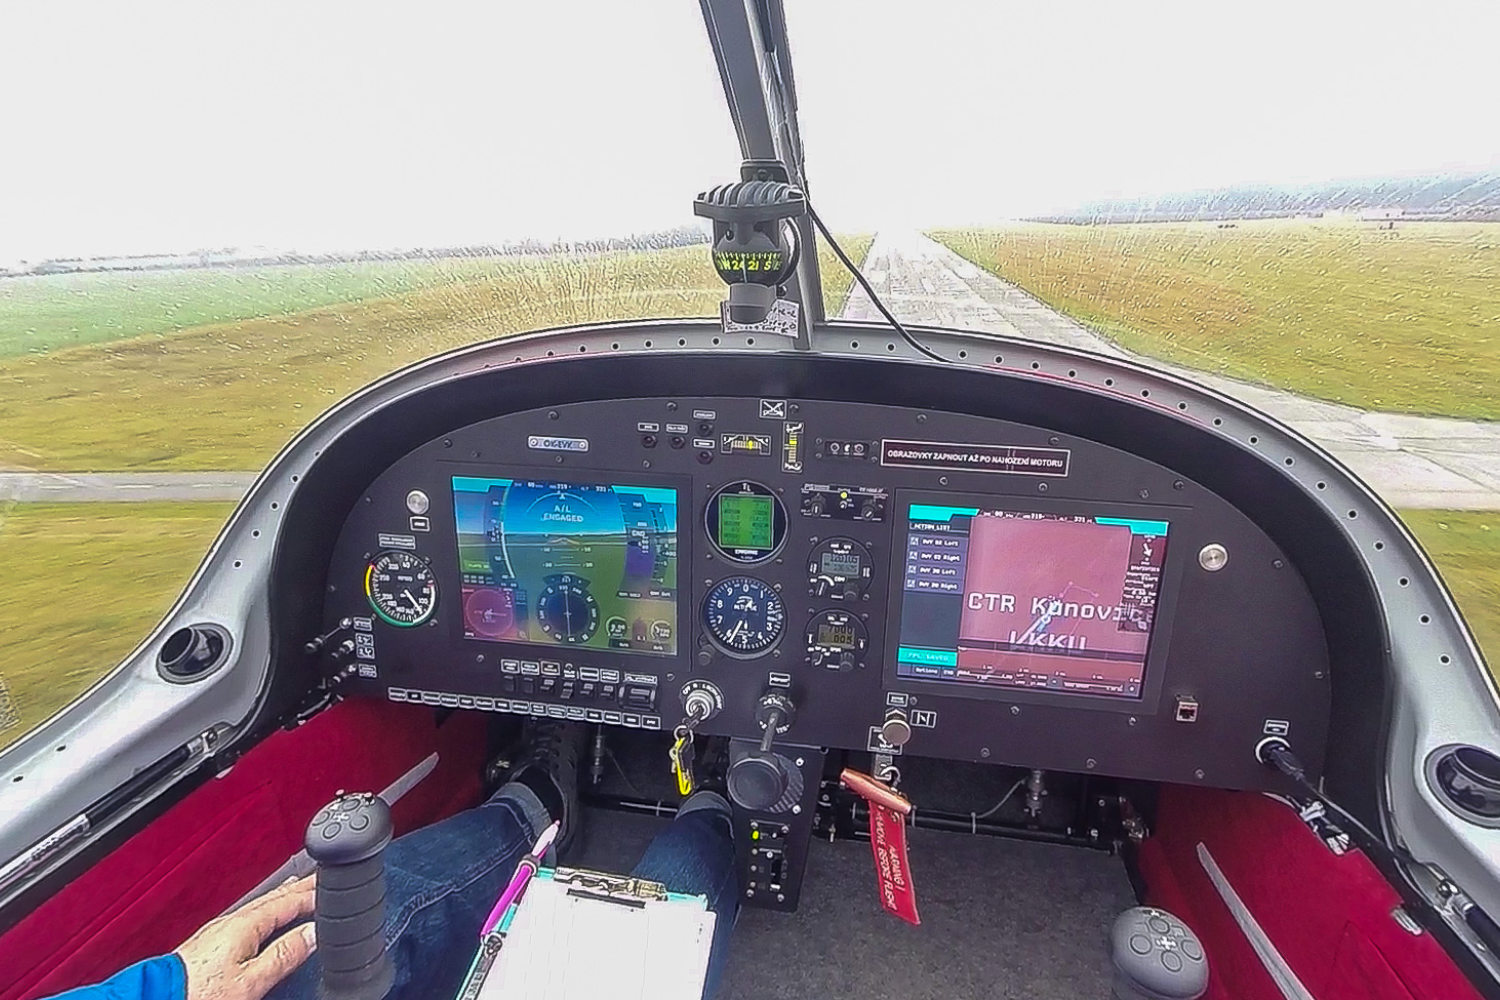 Smart Autopilot landing in automatic mode